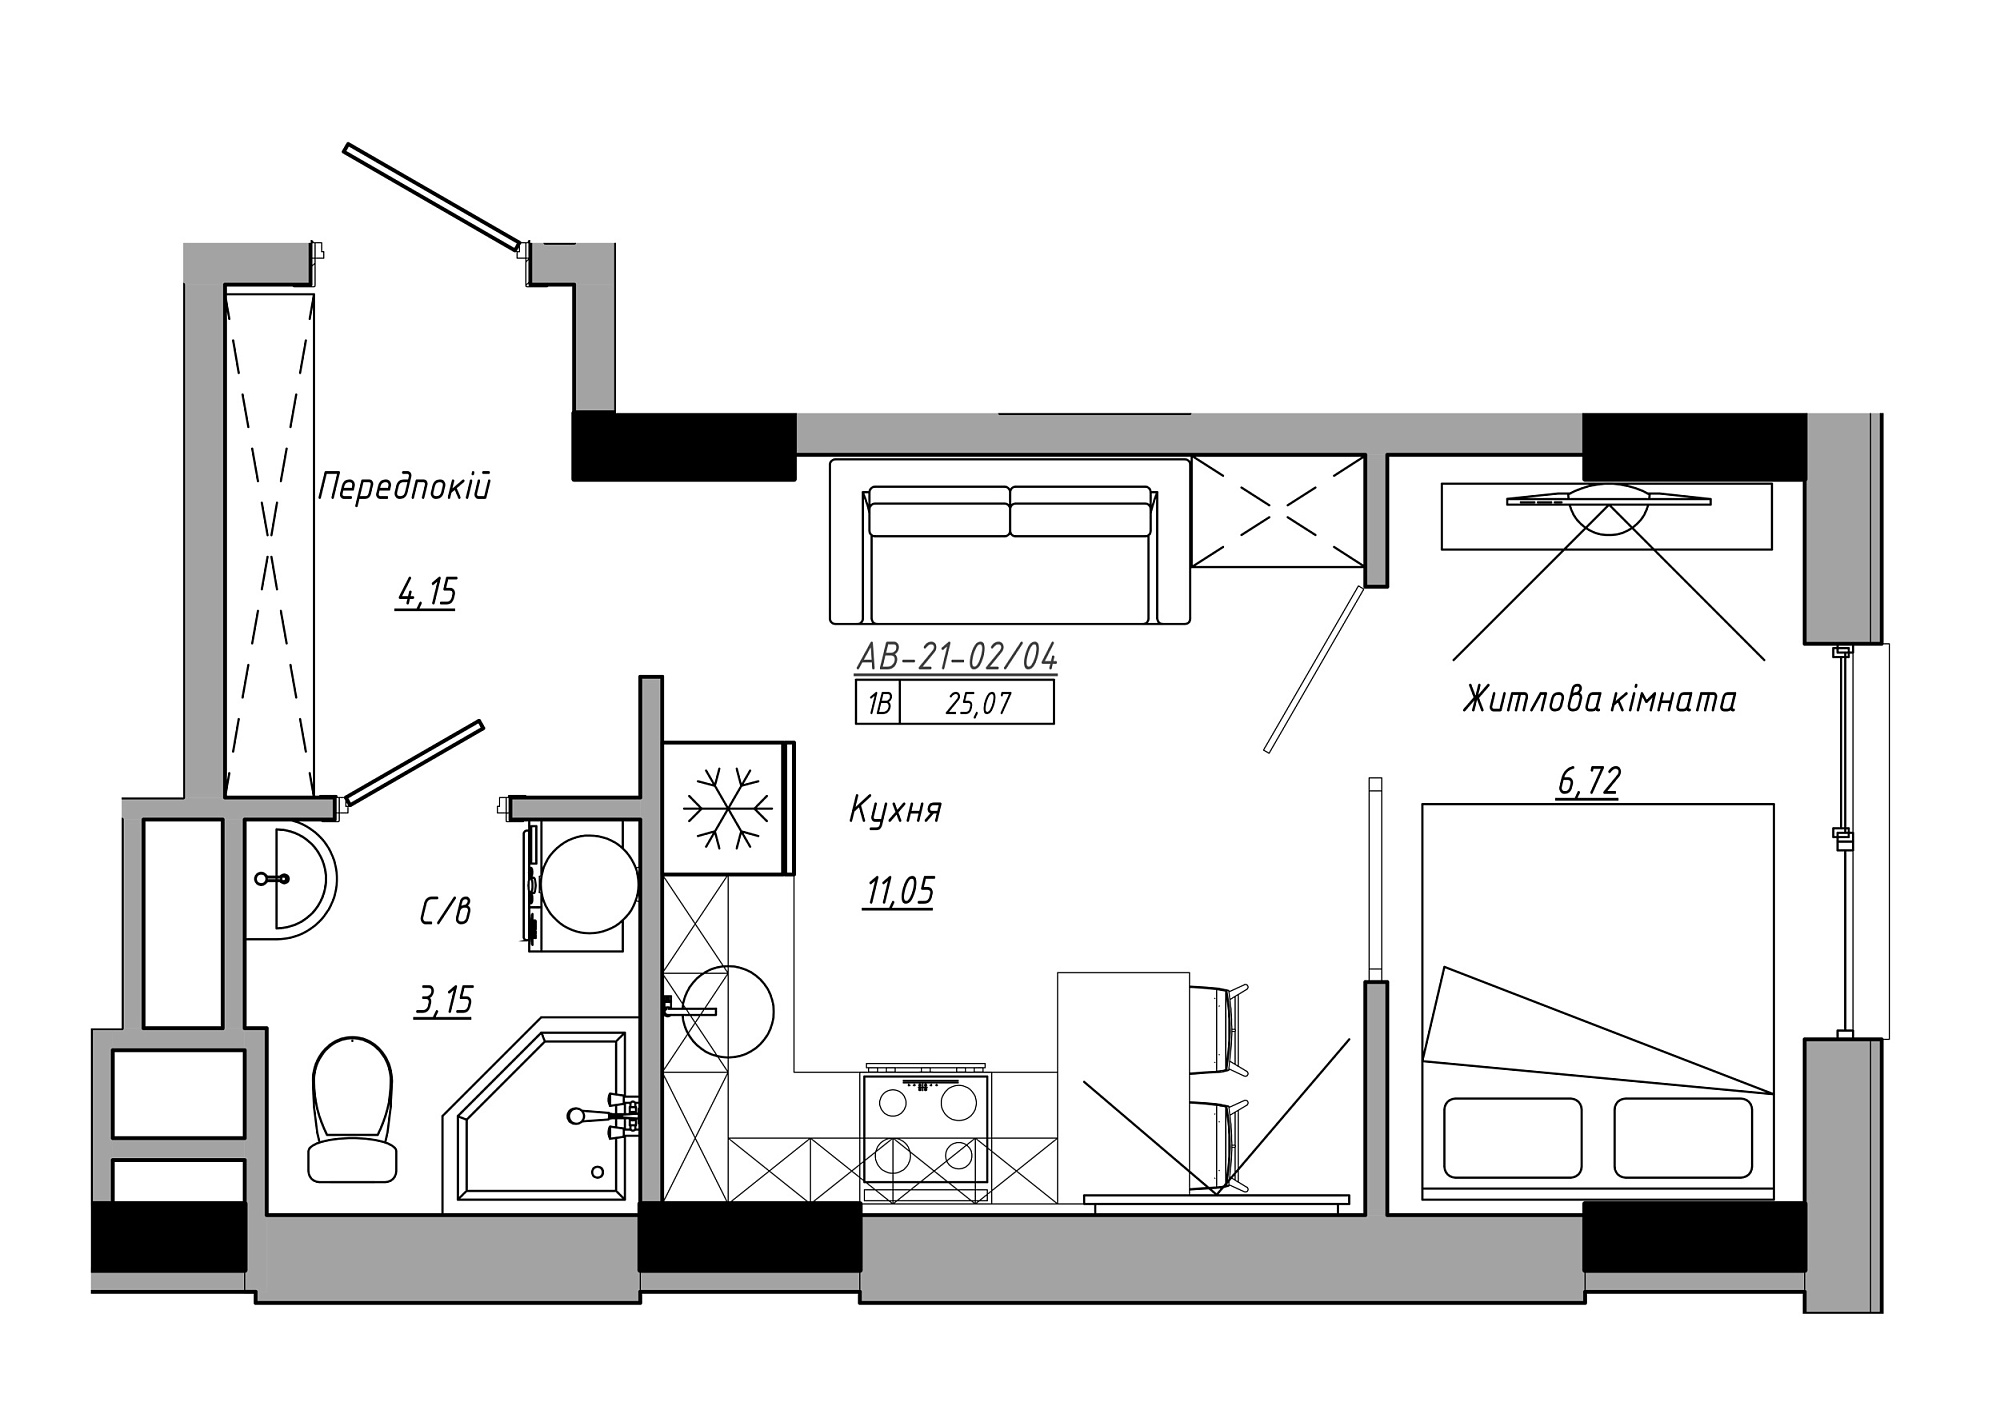 Планування 1-к квартира площею 25.07м2, AB-21-02/00004.